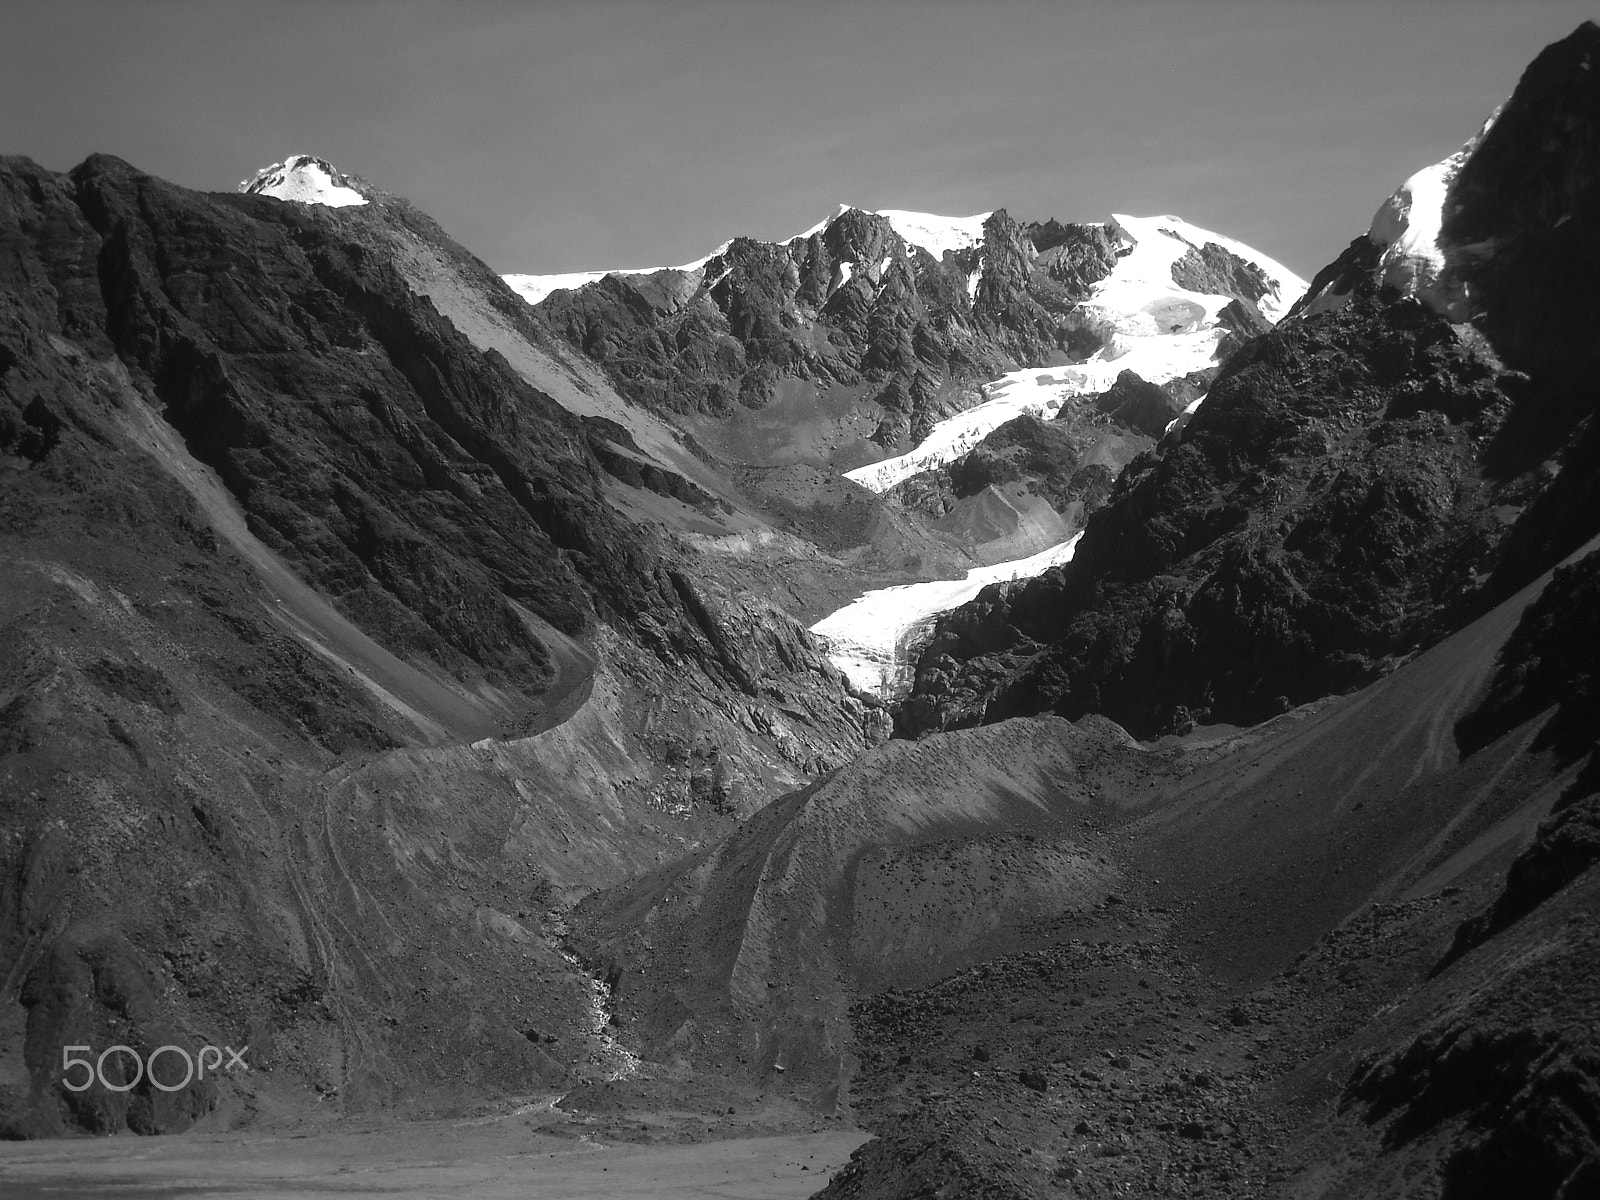 Nikon Coolpix L20 sample photo. Cordillera y glaciar photography